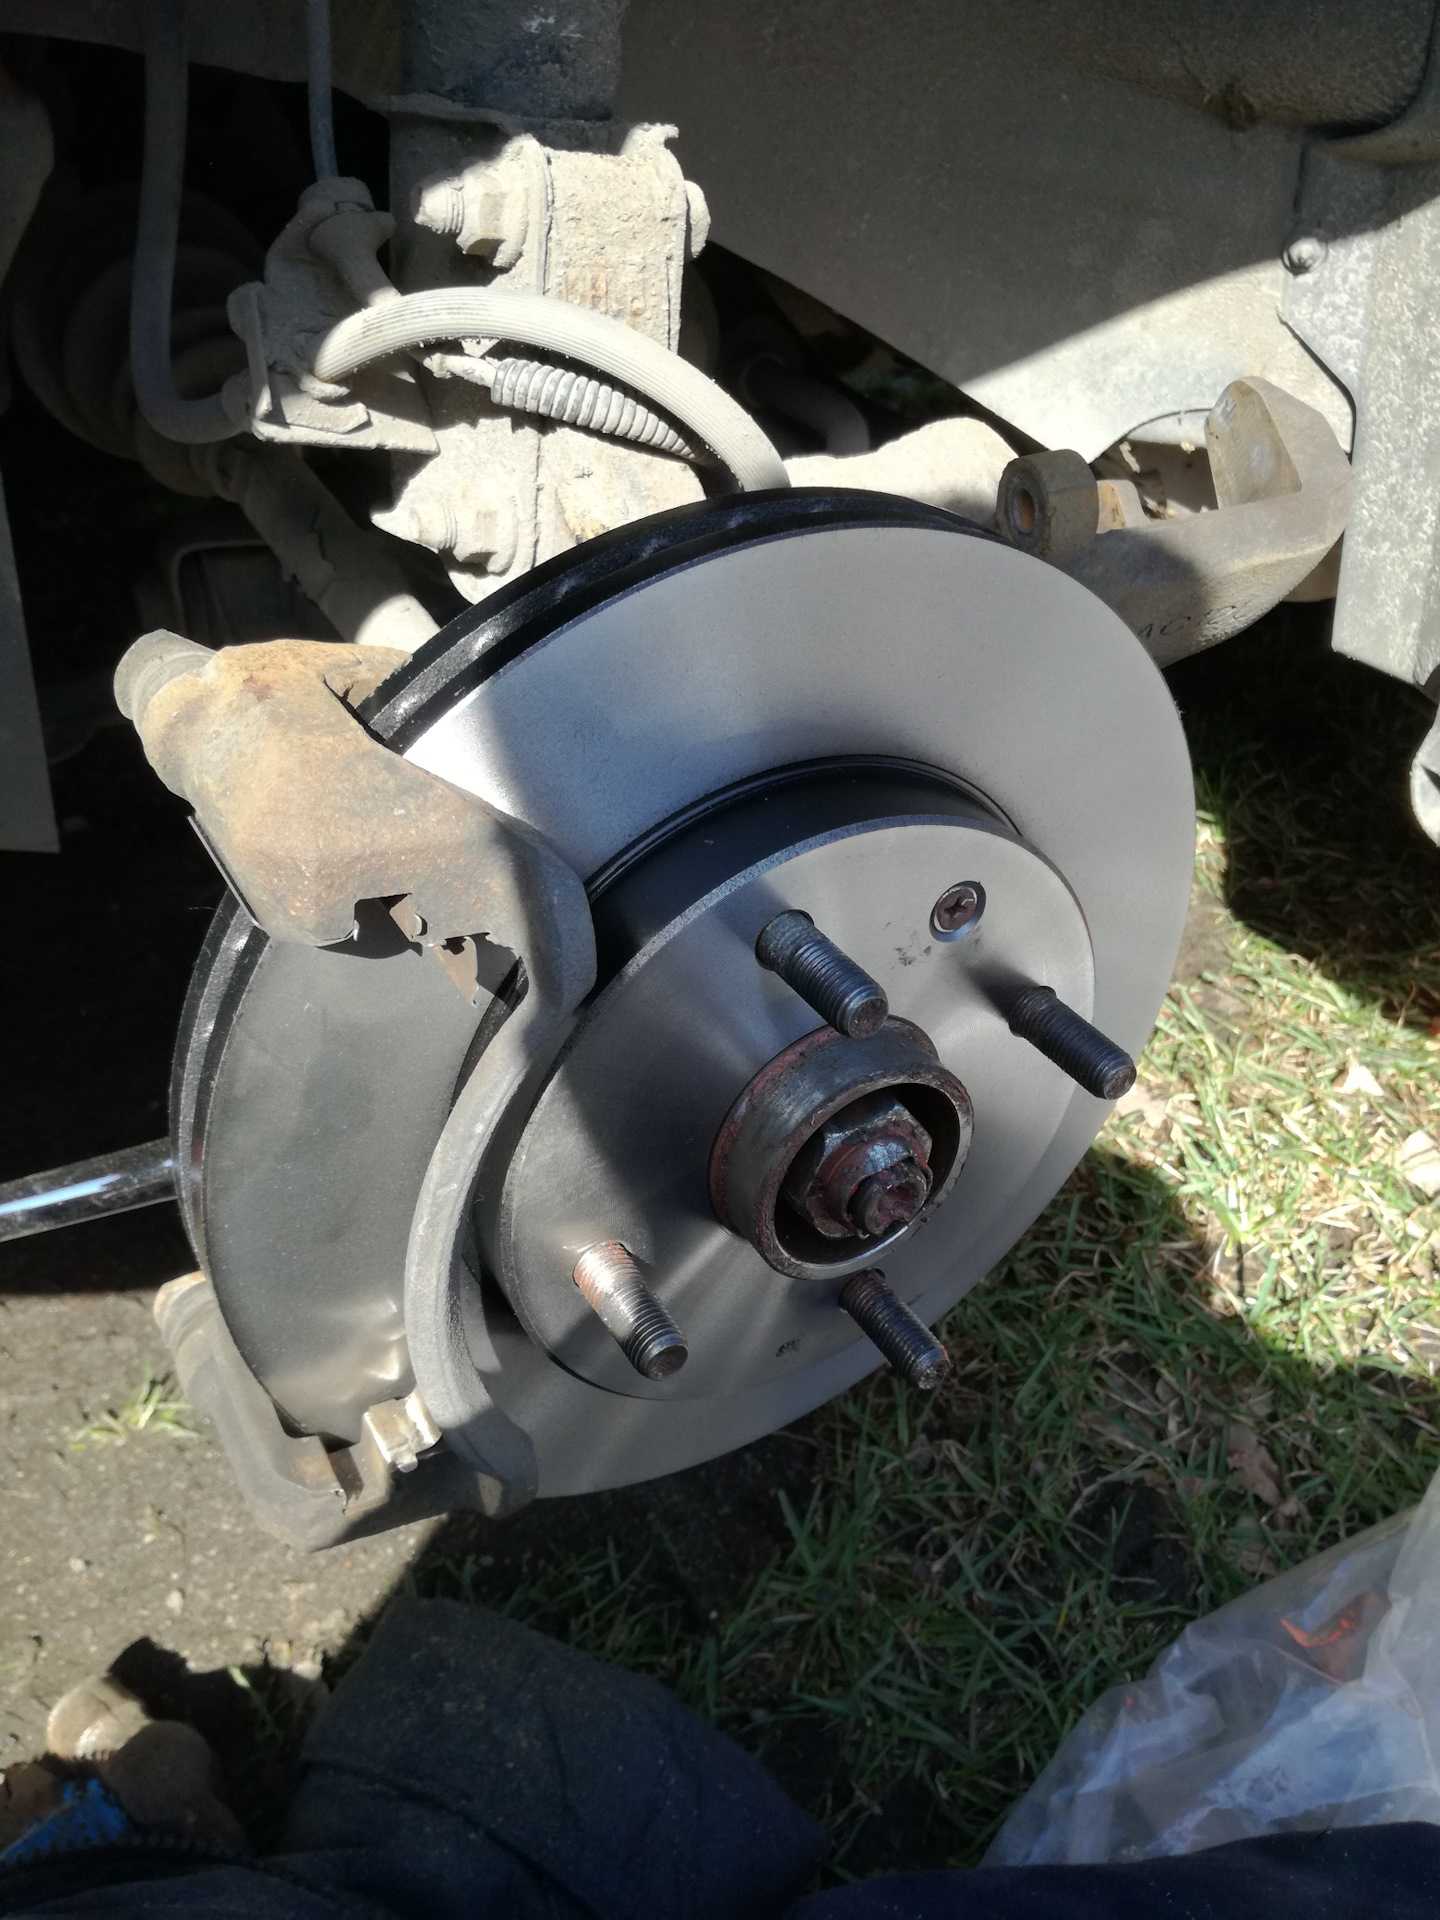 Как заменить тормозные колодки дисковых тормозов Для работы понадобятся: a Комплект для снятия колес b Накидной (обязательно) ключ на 14 c Монтировка